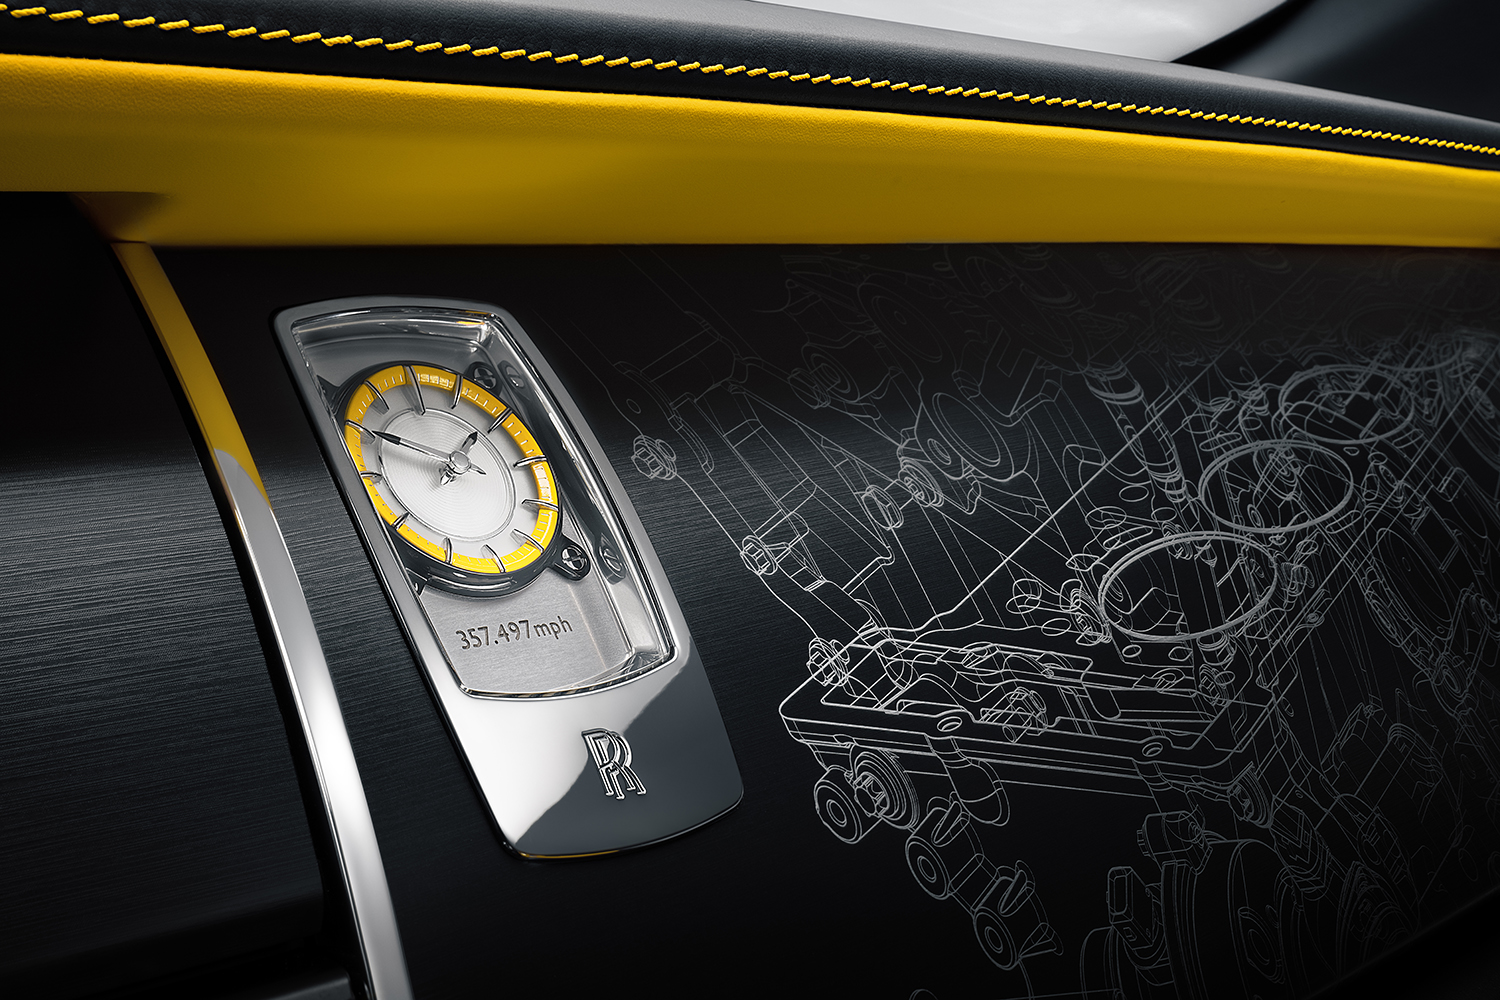 ロールス・ロイス ブラックバッジ レイス ブラックアローのインテリアパネルの時計とエンジンの絵